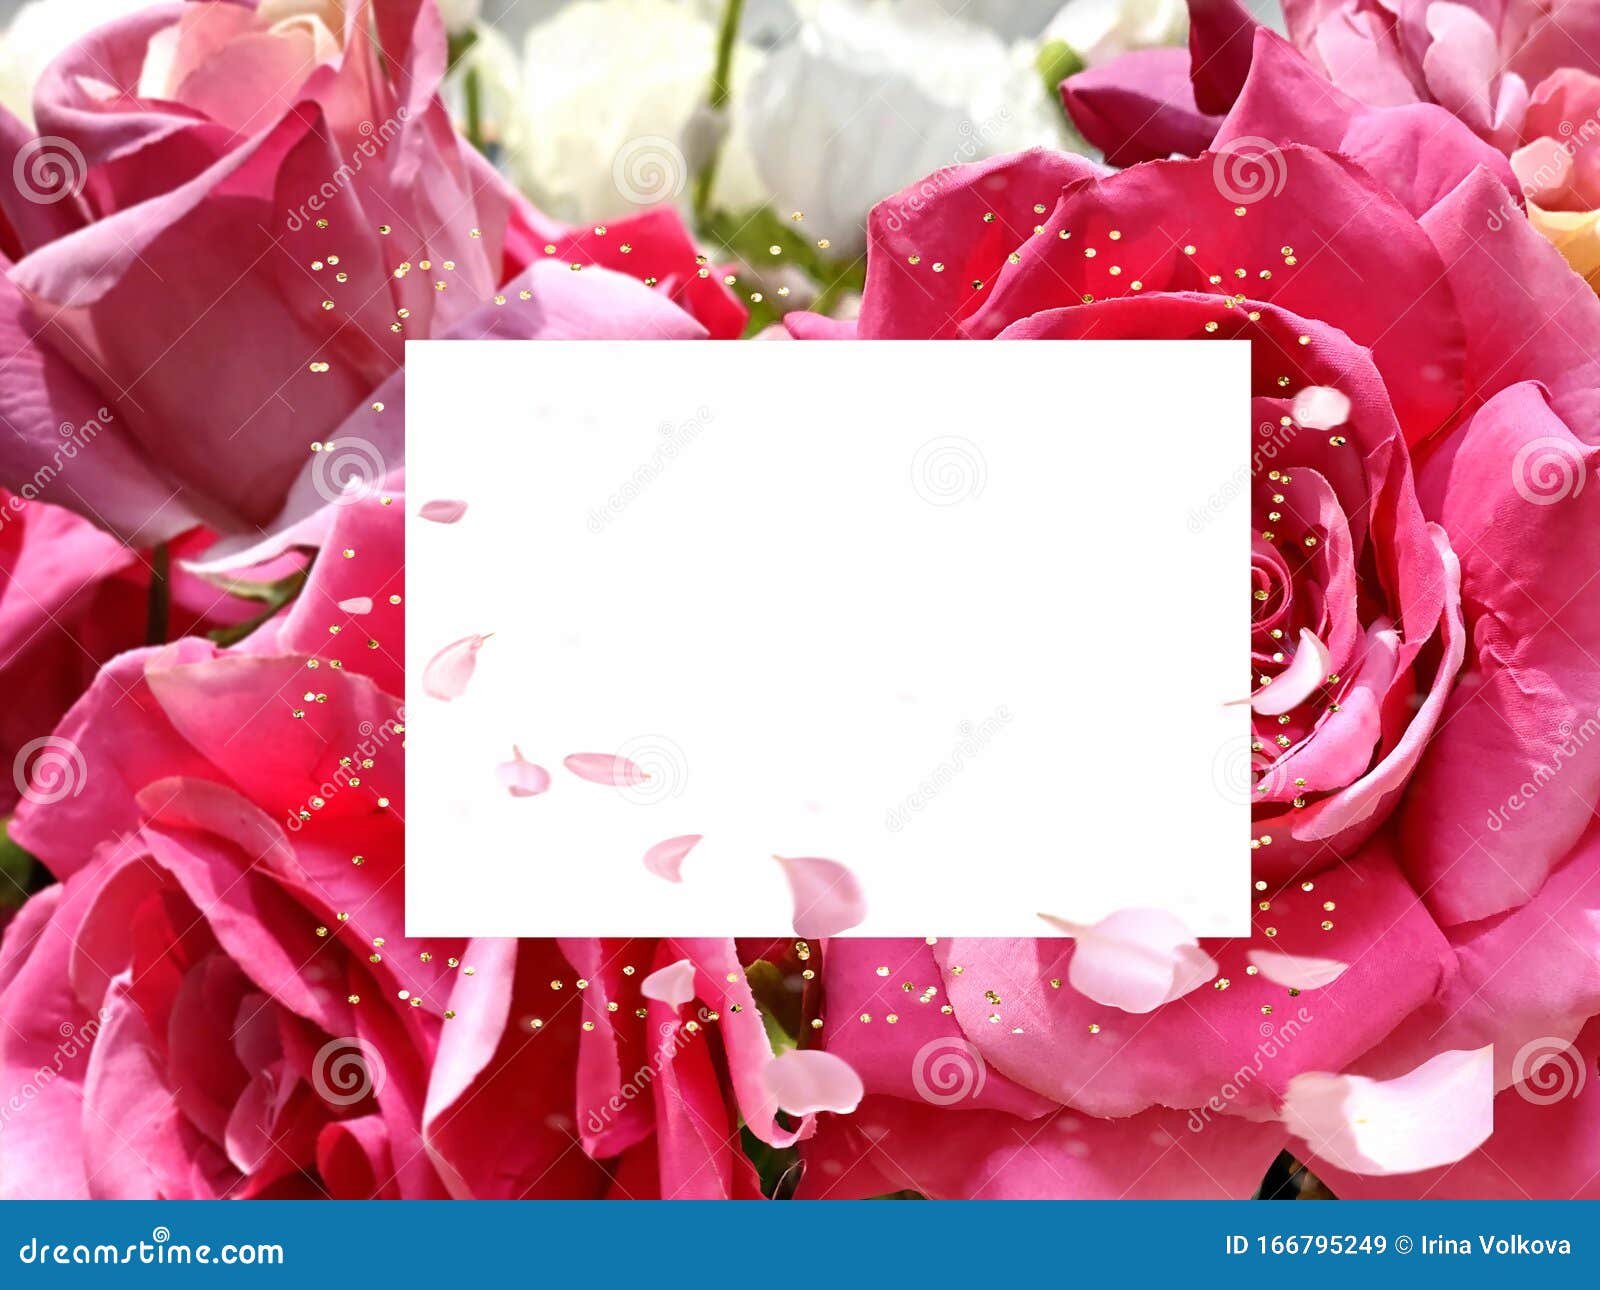 Valentine Festivita Delle Donne E Auguri Di Buon Compleanno Bouquet Di Rose Rosa Bouquet Floreale Spazio Fiori Romantici Felici Immagine Stock Immagine Di Amico Saluti